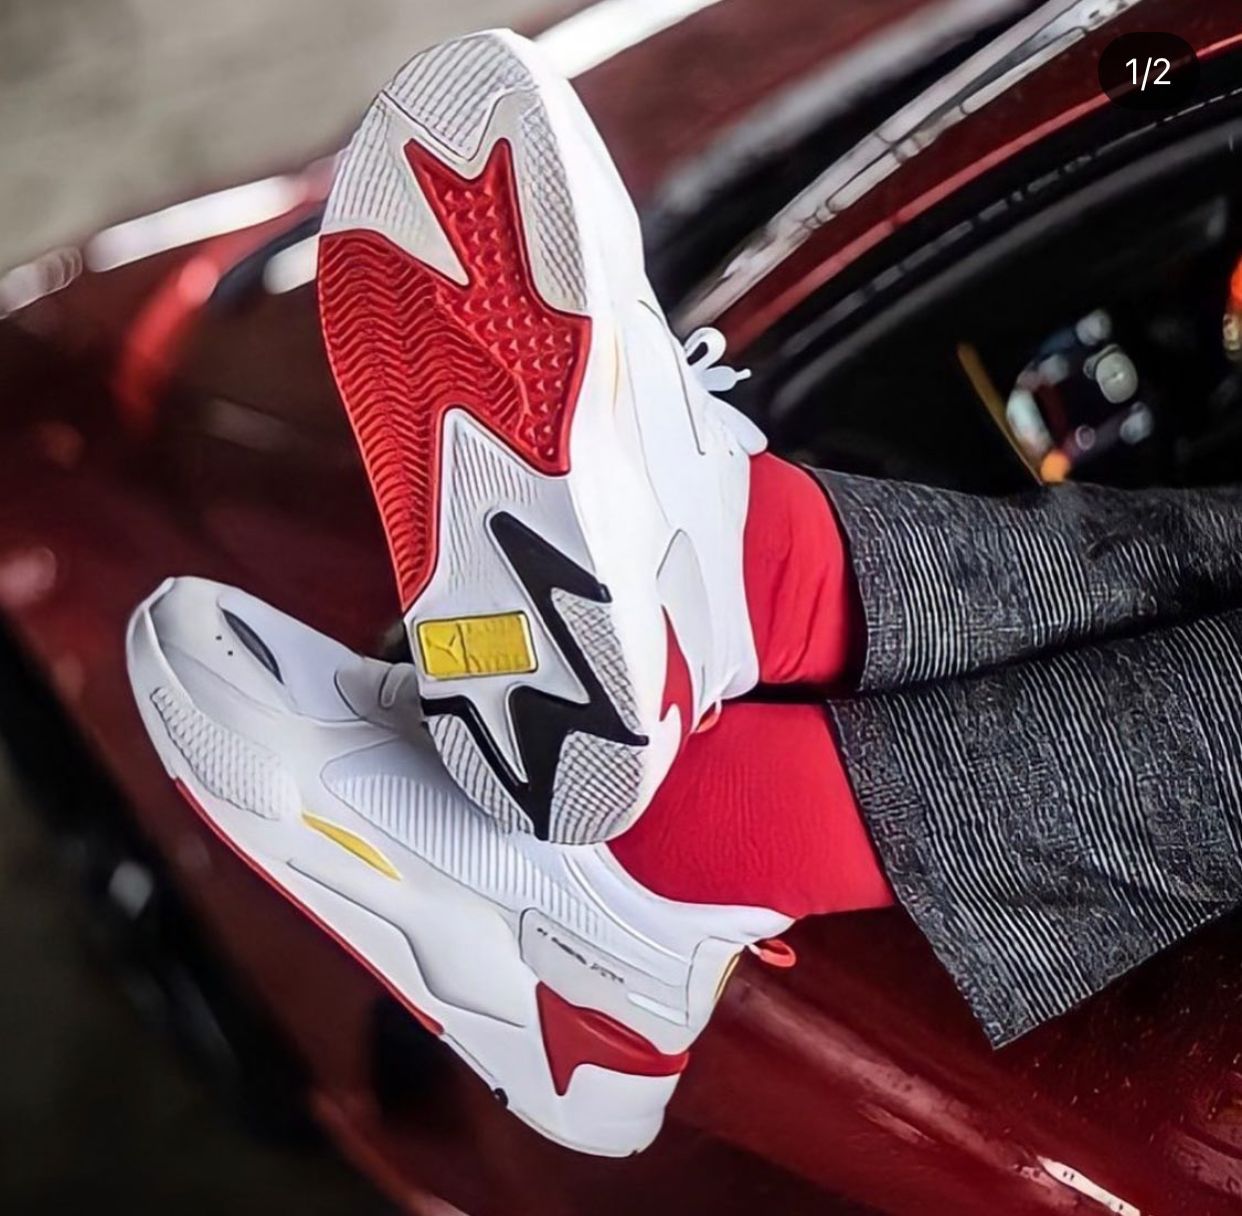 Amazing RSX Ferrari Shoes - AmazingBaba